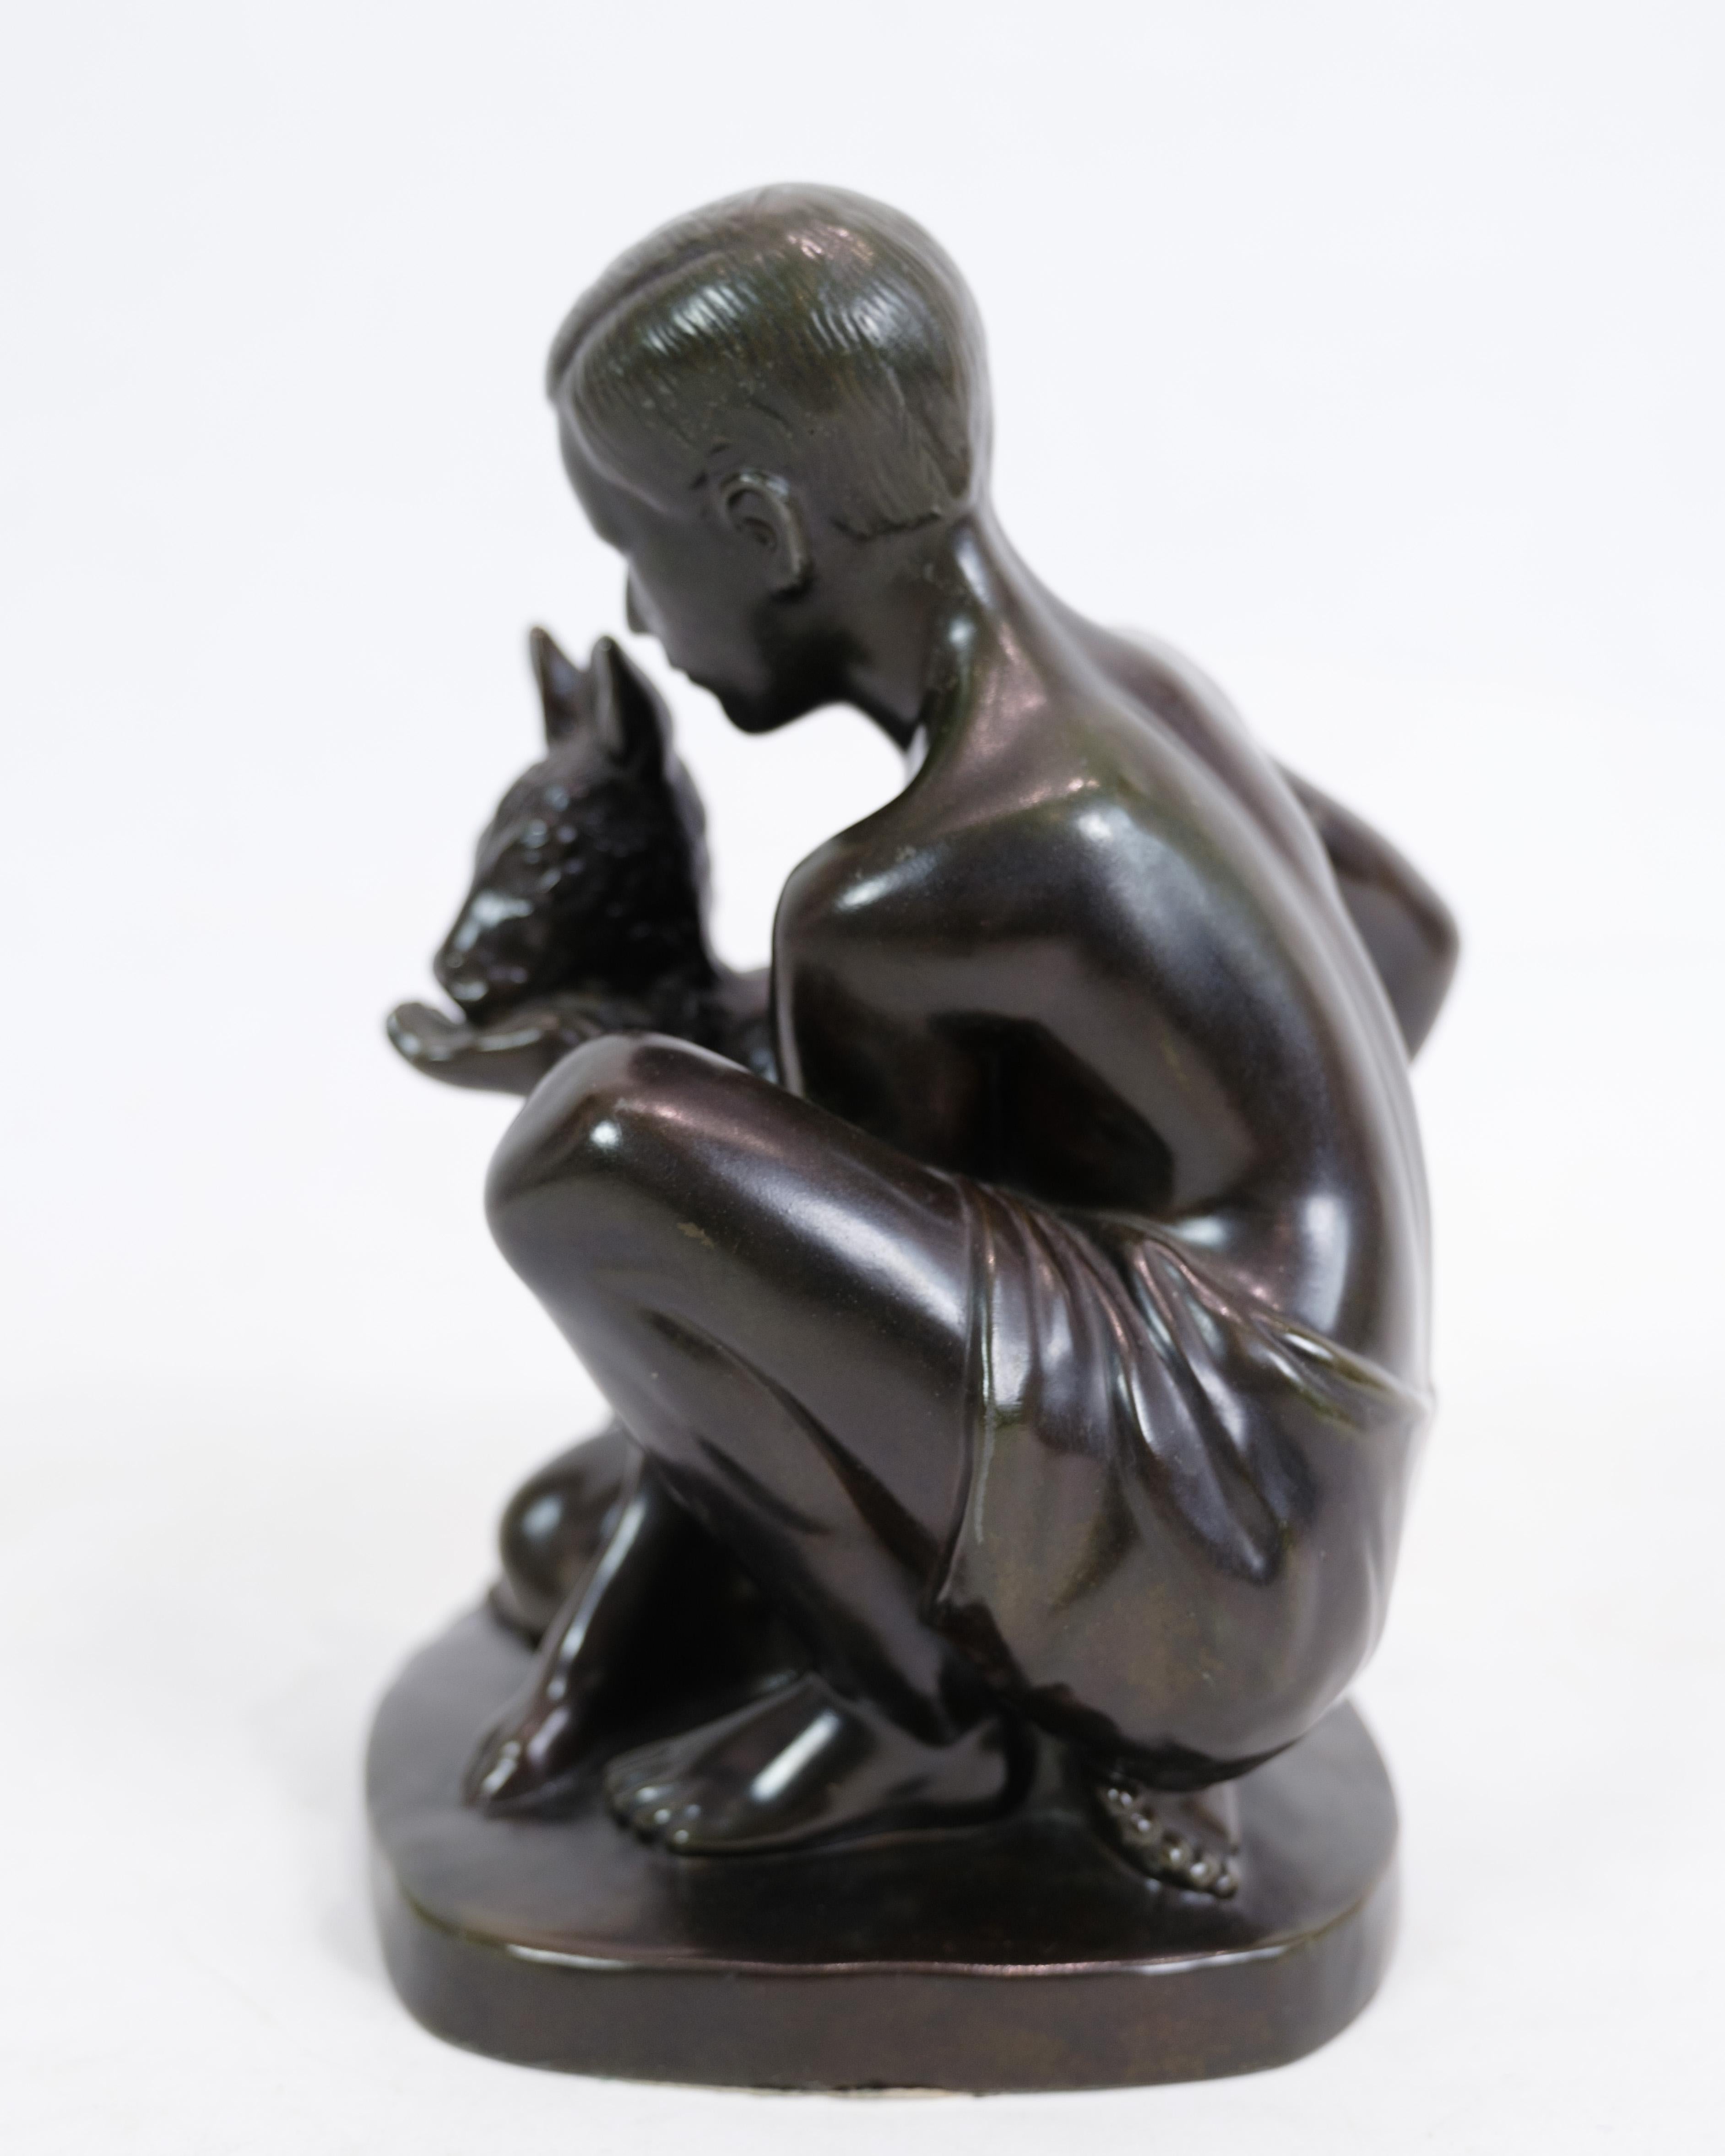 Die Figur von Just Andersen stellt eine wunderschön gearbeitete Skulptur dar, die einen Jungen und ein Hirschkuh-Motiv zeigt. Es ist mit der Modellbezeichnung Just A D2318 gekennzeichnet. Diese Skulptur strahlt eine gewisse Schlichtheit aus und